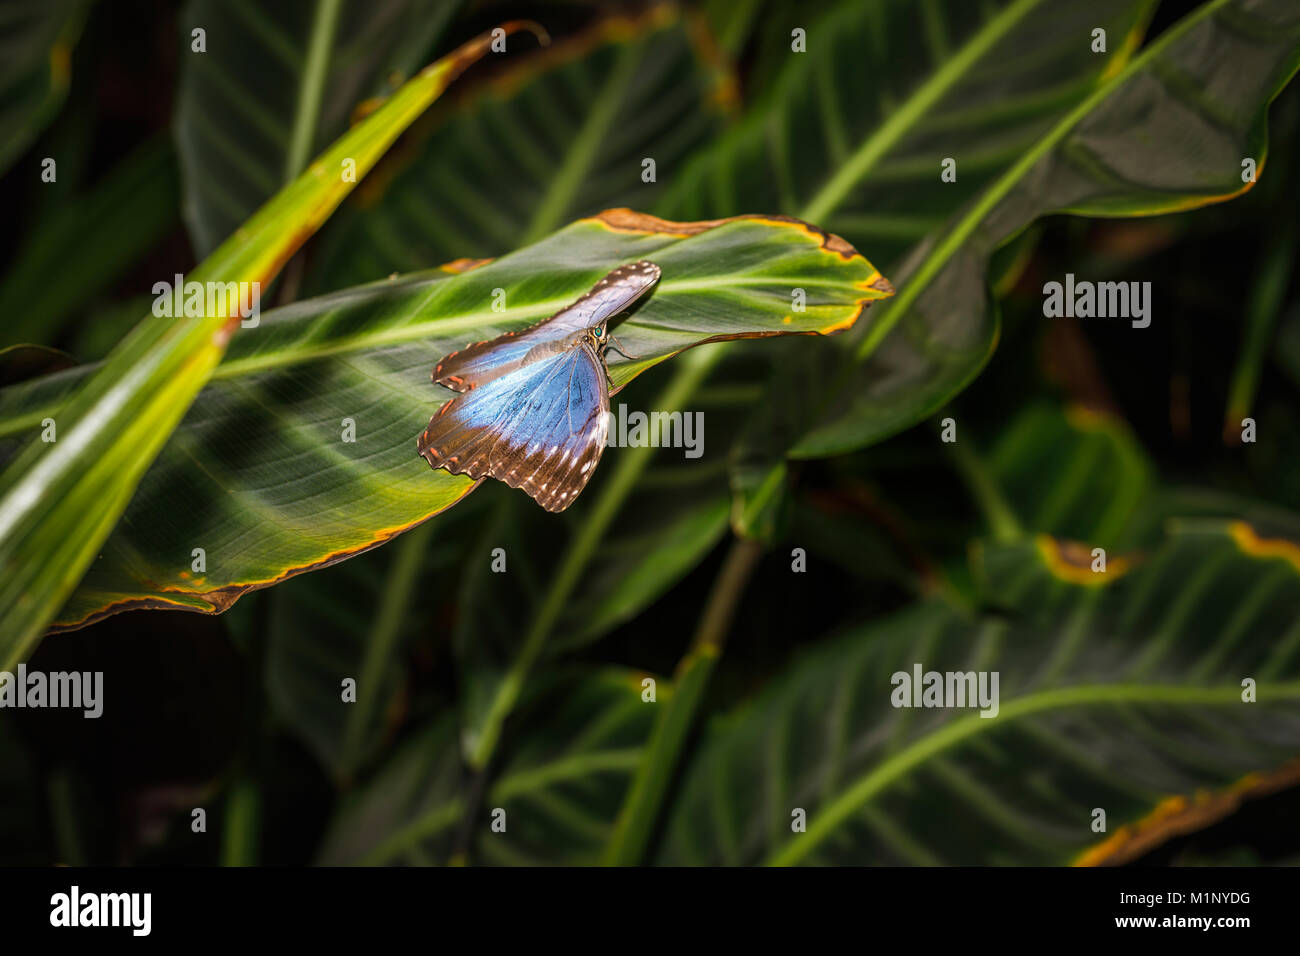 Schillernden blauen Morpho Schmetterling (Morpho peleides) in Ruhe auf ein Blatt, offenen Flügeln, RHS Wisley Schmetterling Ausstellung, Surrey, Südosten, England, Grossbritannien Stockfoto